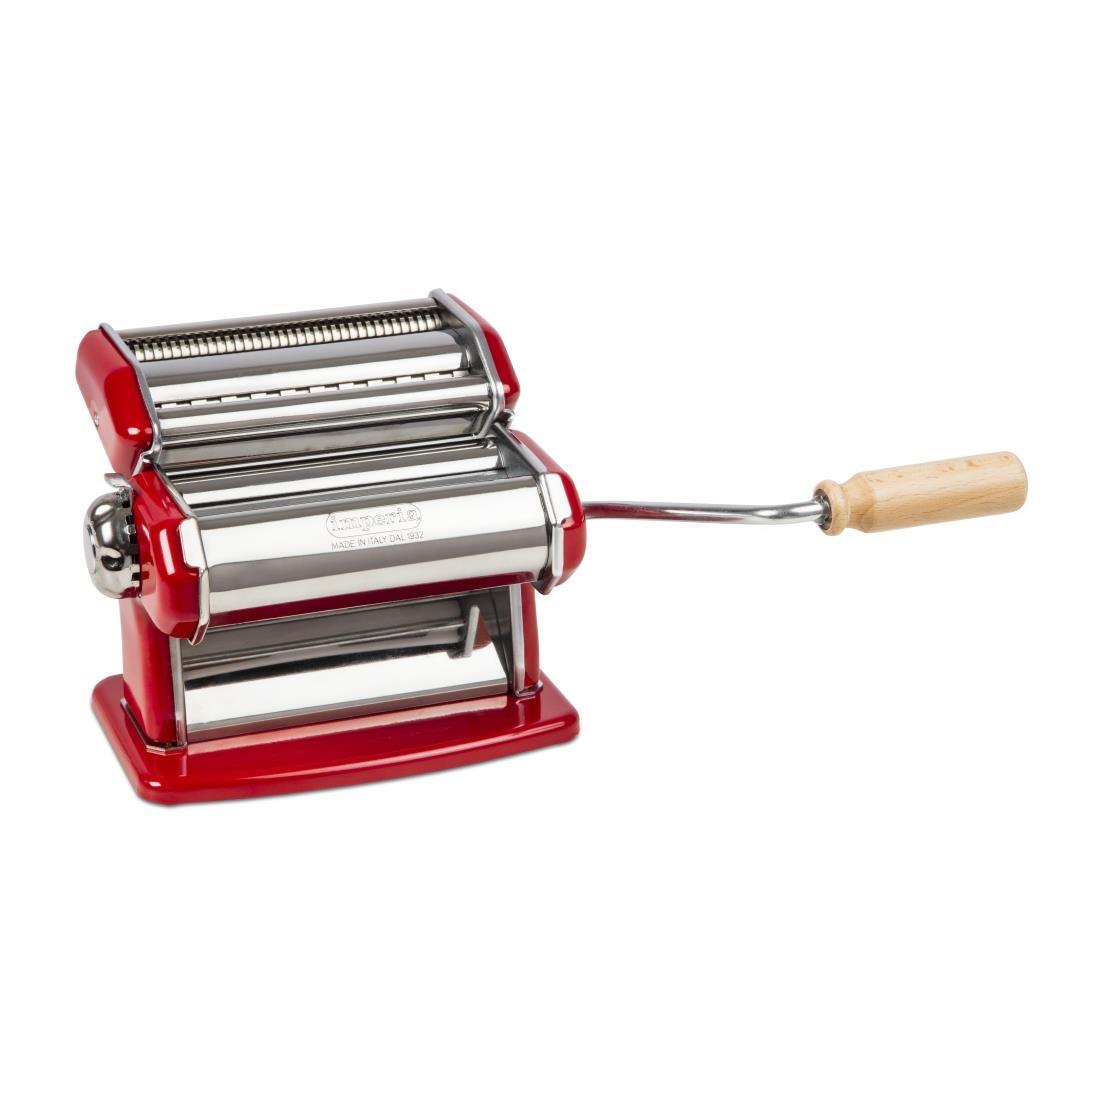 Imperia Pasta Machine - Red - DA426 | Go for Green Appliances